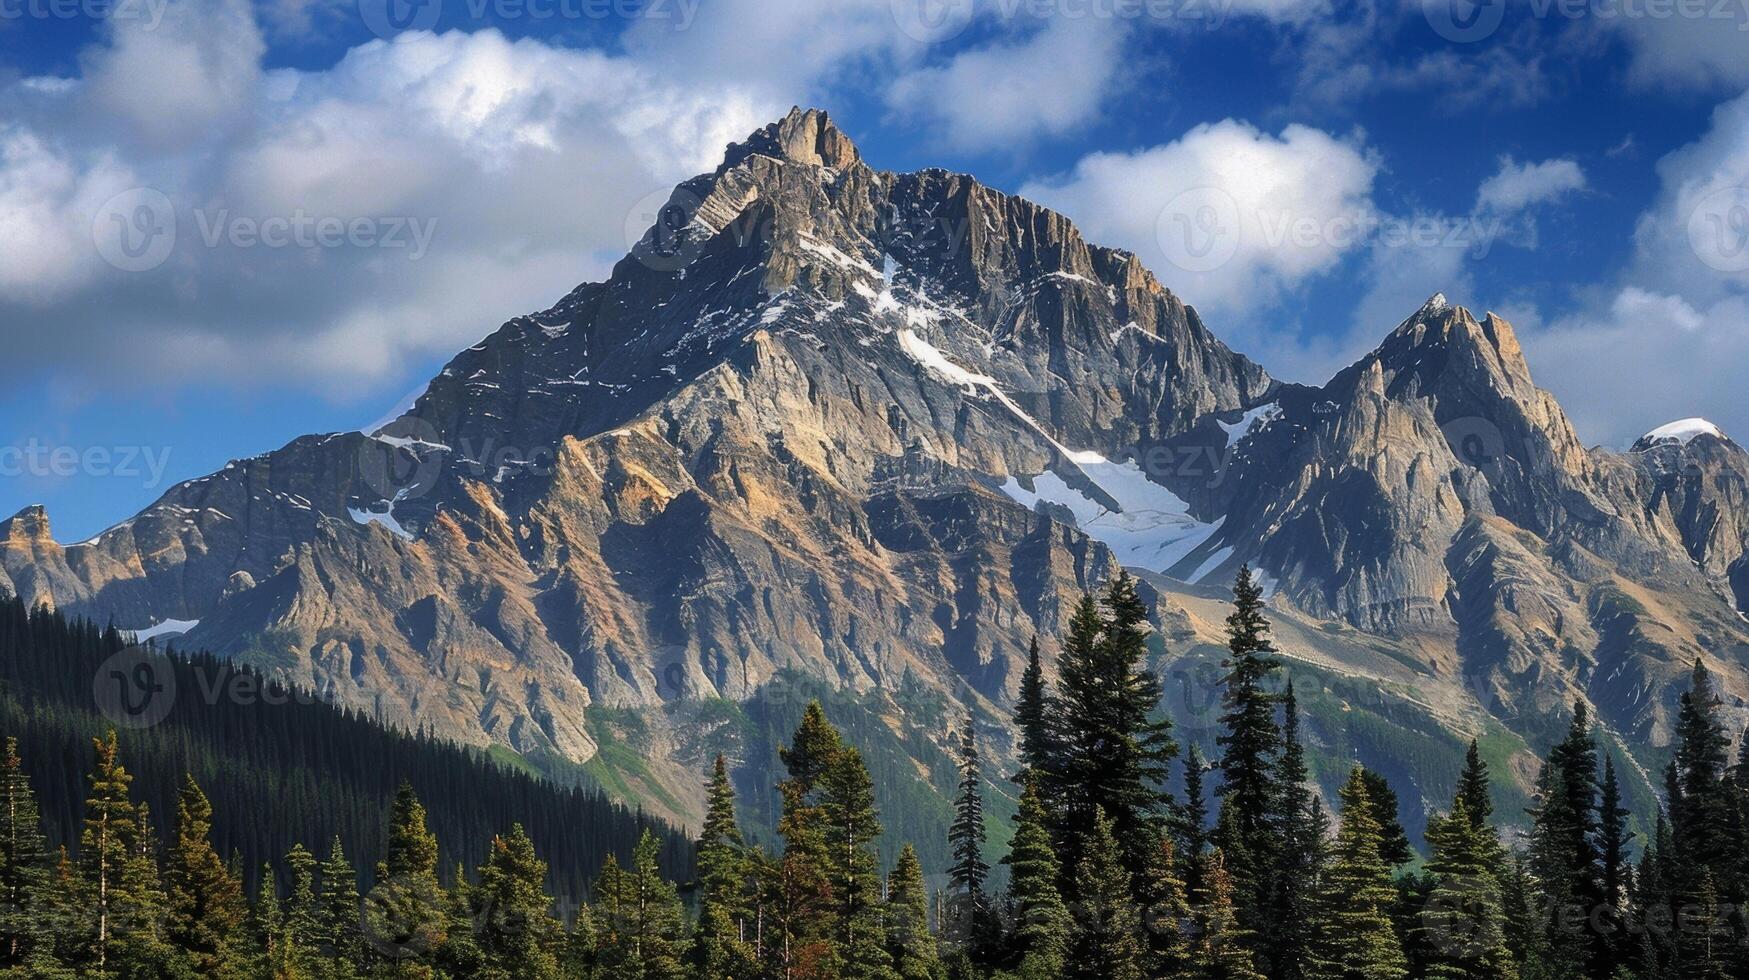 une majestueux Montagne de pointe en hausse au dessus le limite forestière inspirant une sens de merveille et admiration photo